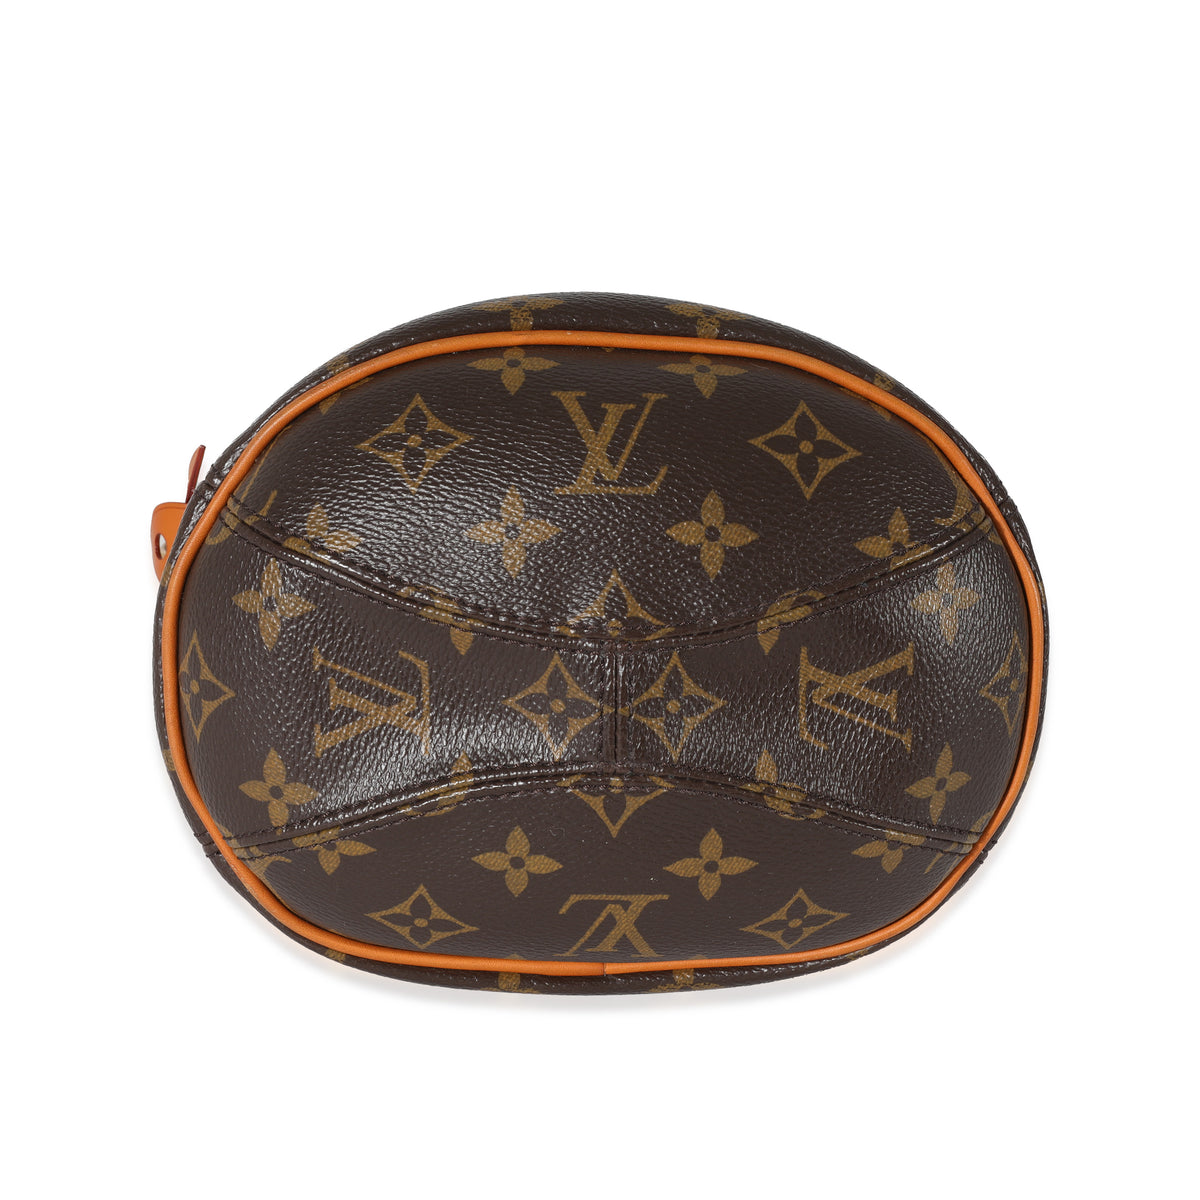 Louis Vuitton Monogram Iconoclast Punching Bag Karl Lagerfeld at